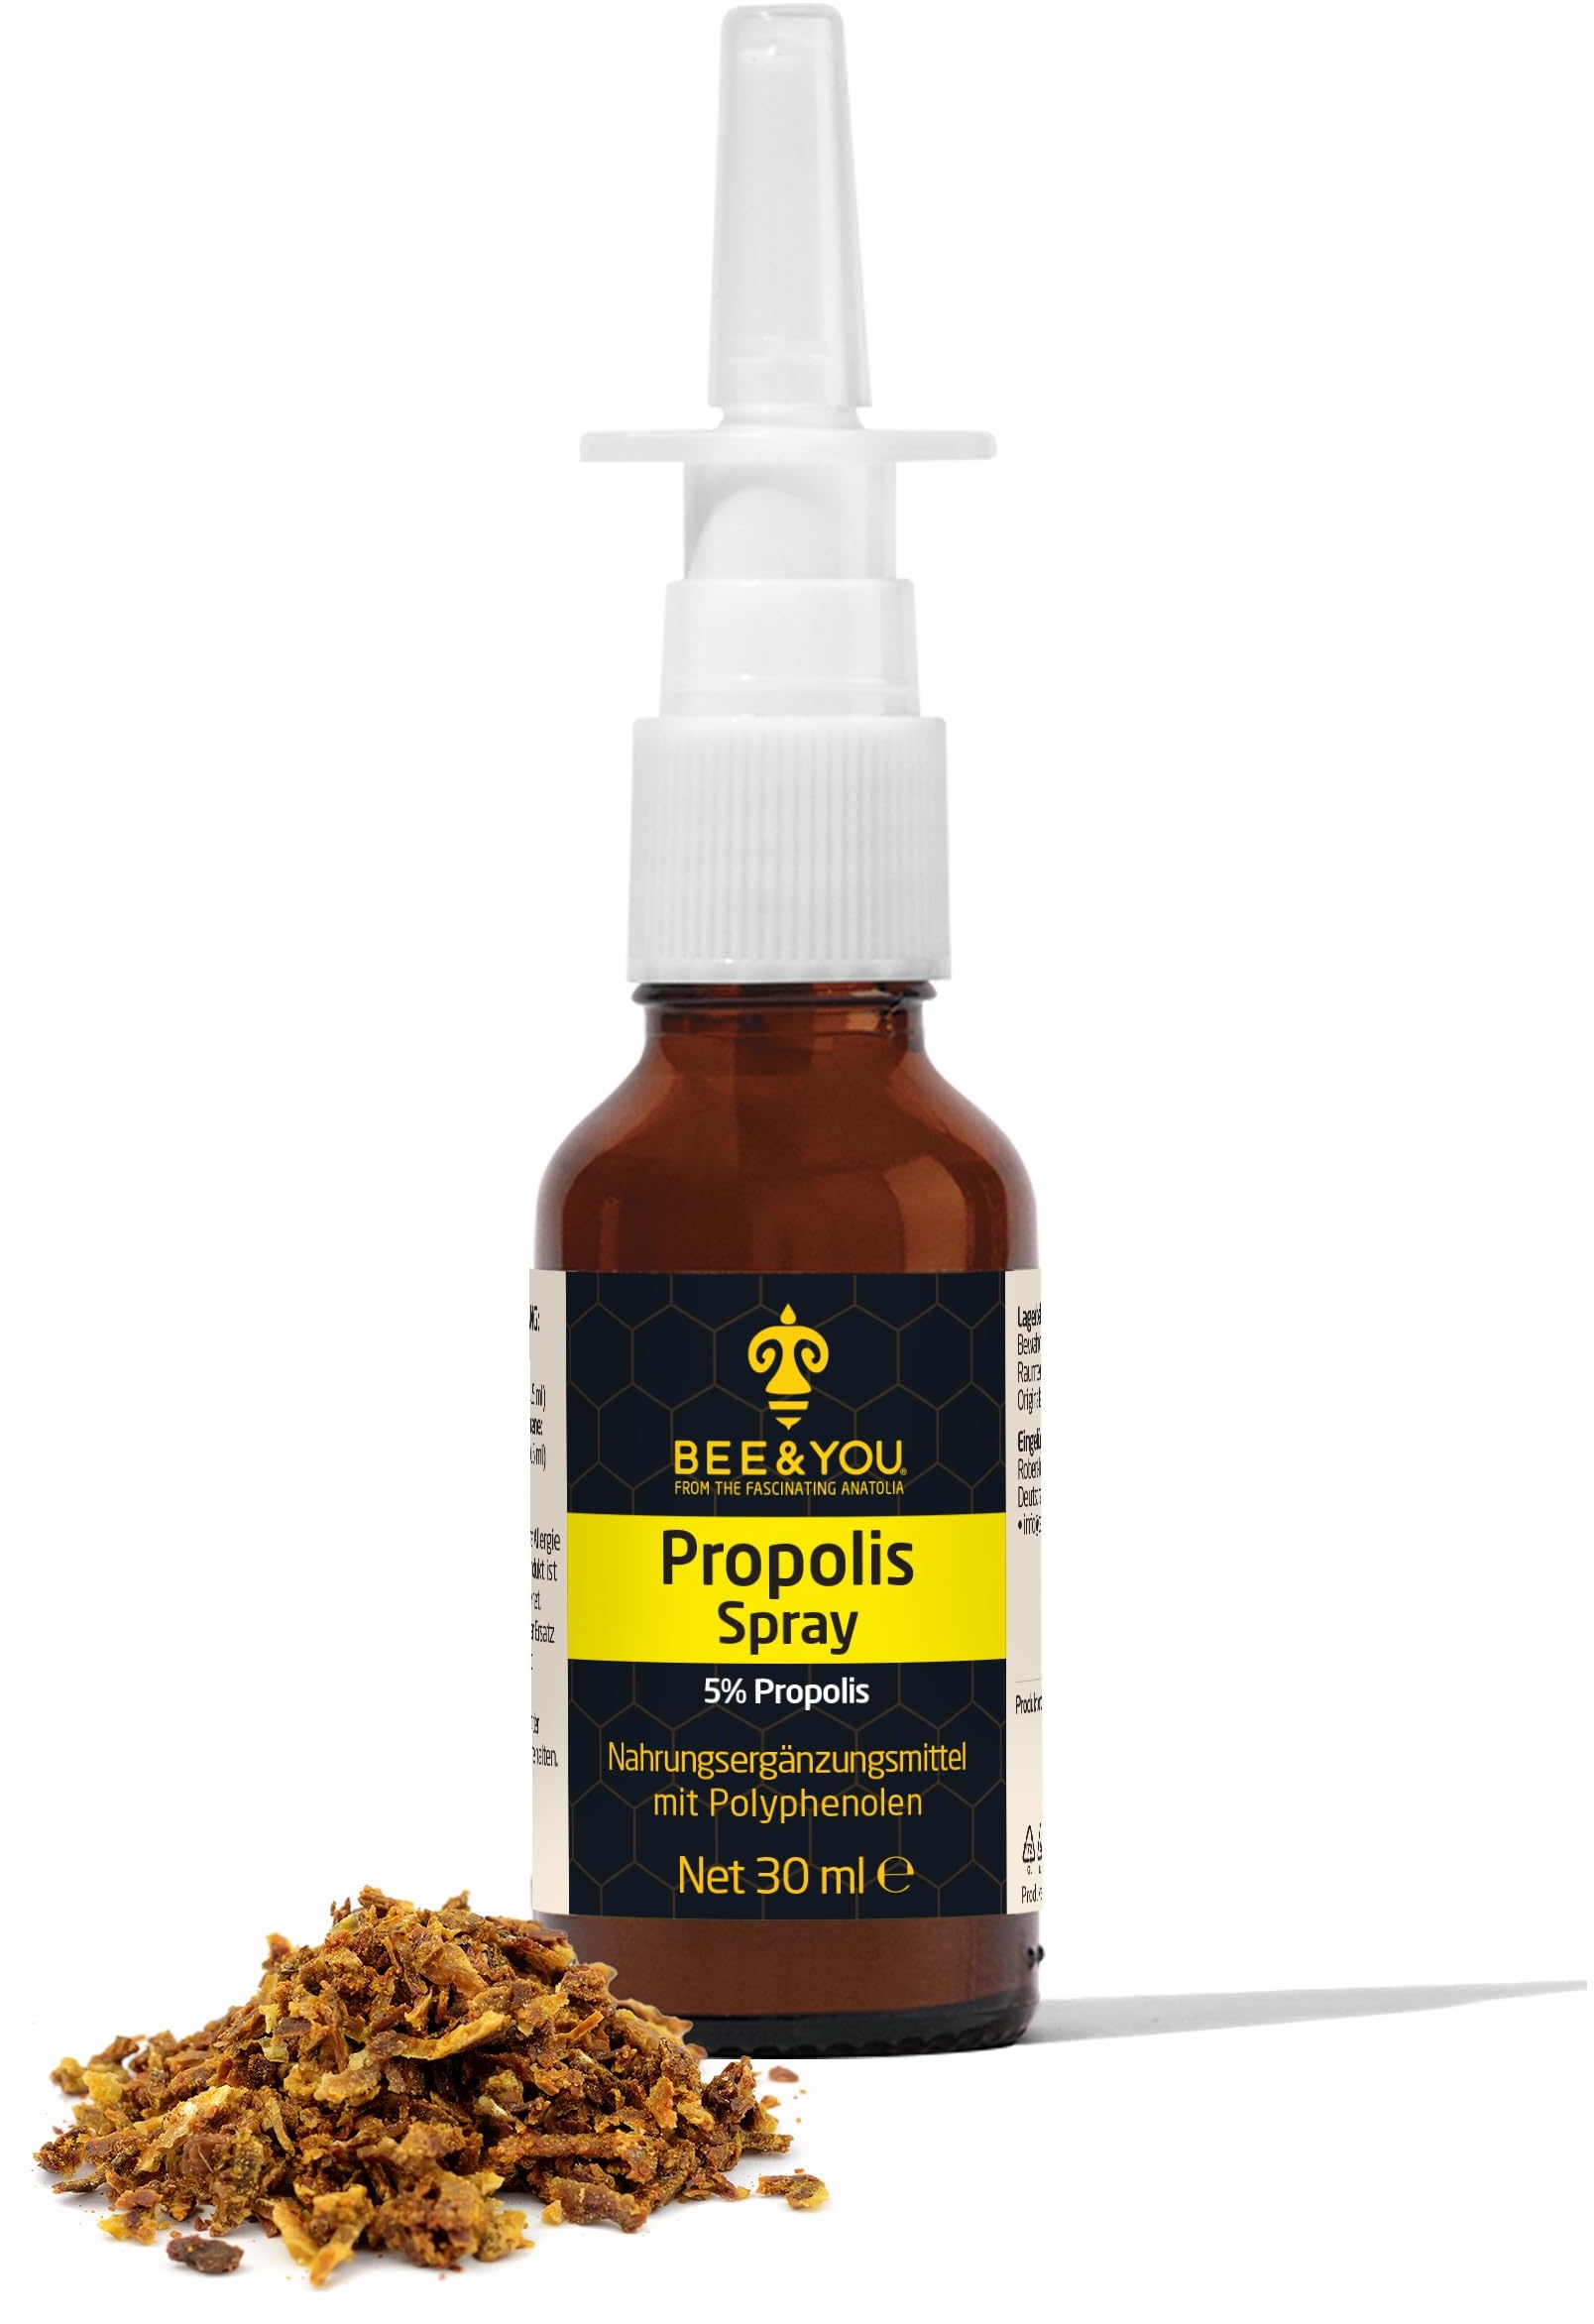 BEE&YOU Propolis Spray, Nasenspray 30 ml Propolis Extrakt, Spray für Nase, für Kinder und Erwachsene, befreit die Nase,ohne Zusatzstoffe, natürlich, ohne Alkohol & Gewöhnungseffekt, 33 Auszeichnungen